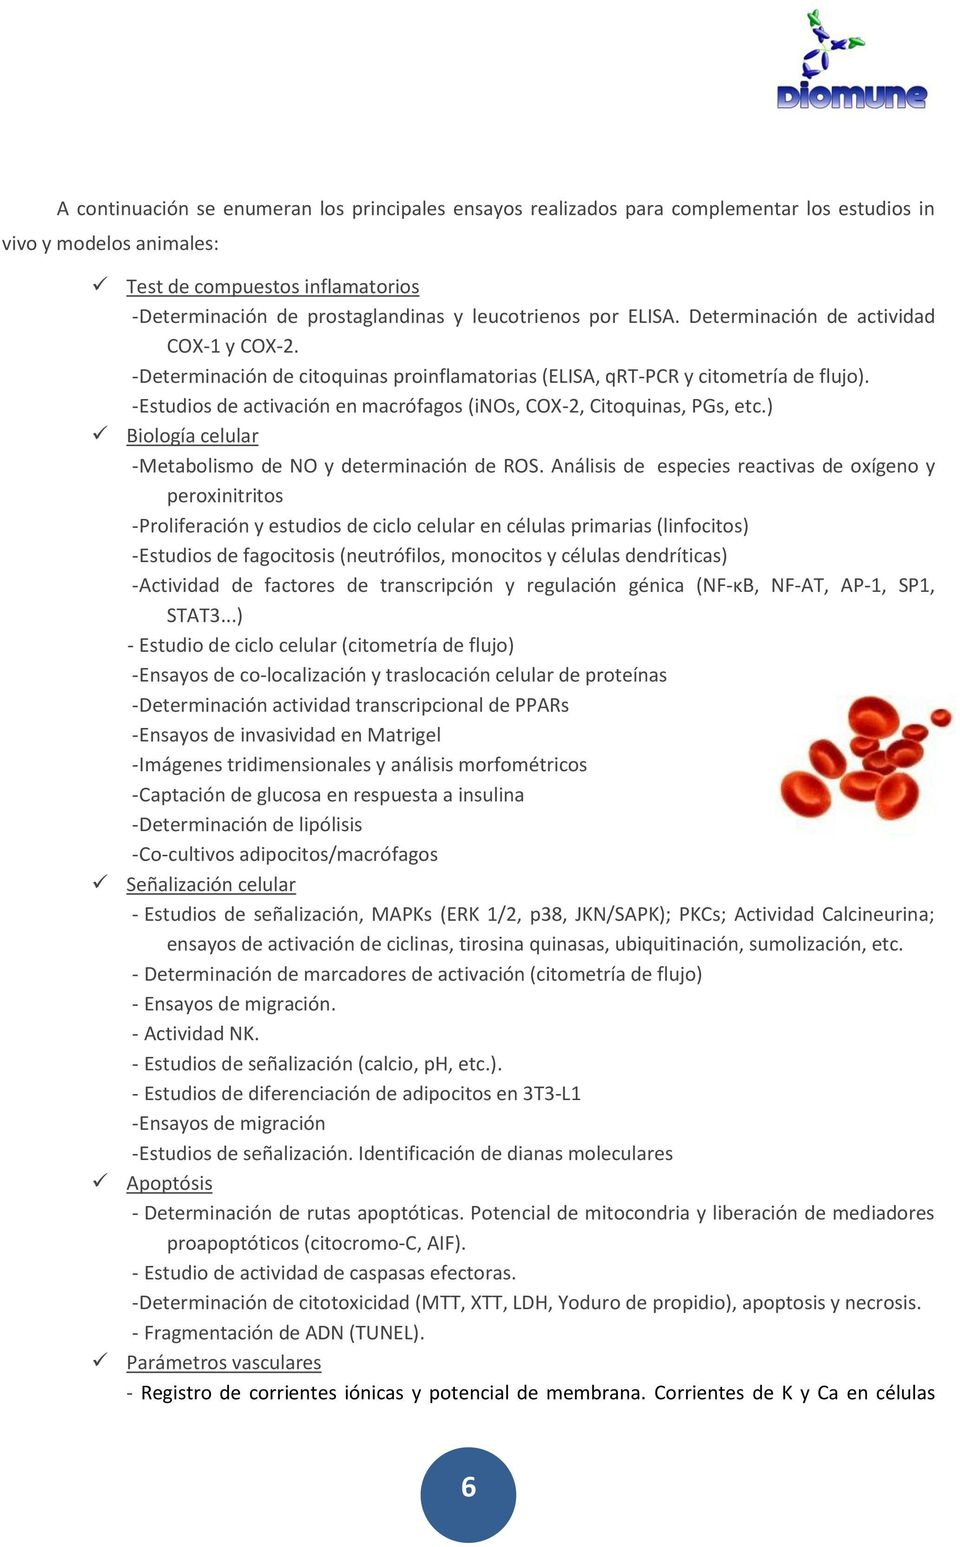 - Estudios de activación en macrófagos (inos, COX-2, Citoquinas, PGs, etc.) Biología celular - Metabolismo de NO y determinación de ROS.